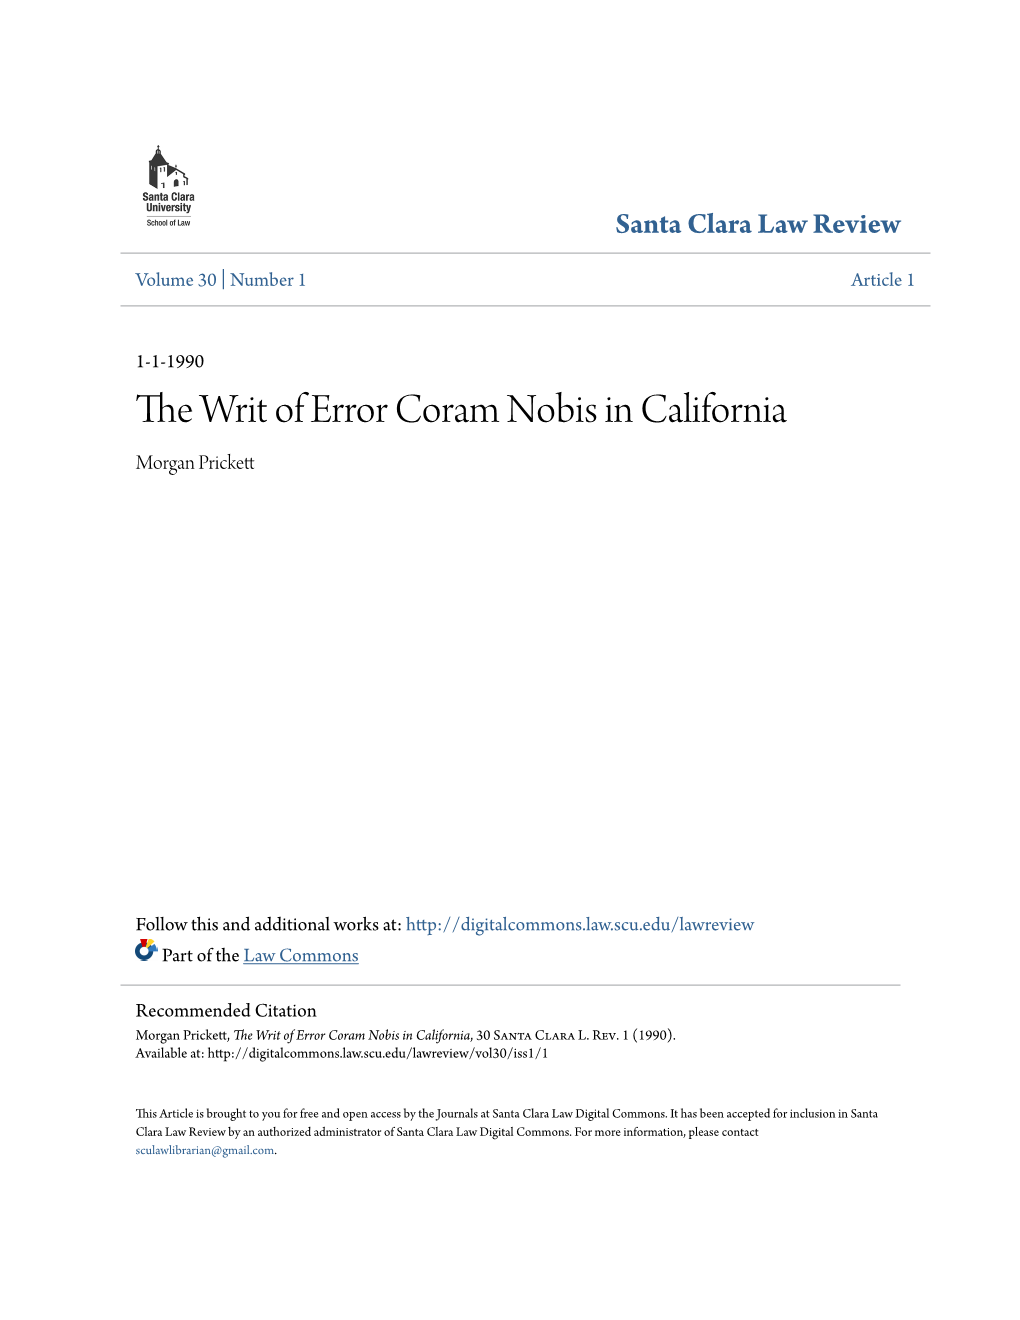 The Writ of Error Coram Nobis in California, 30 Santa Clara L